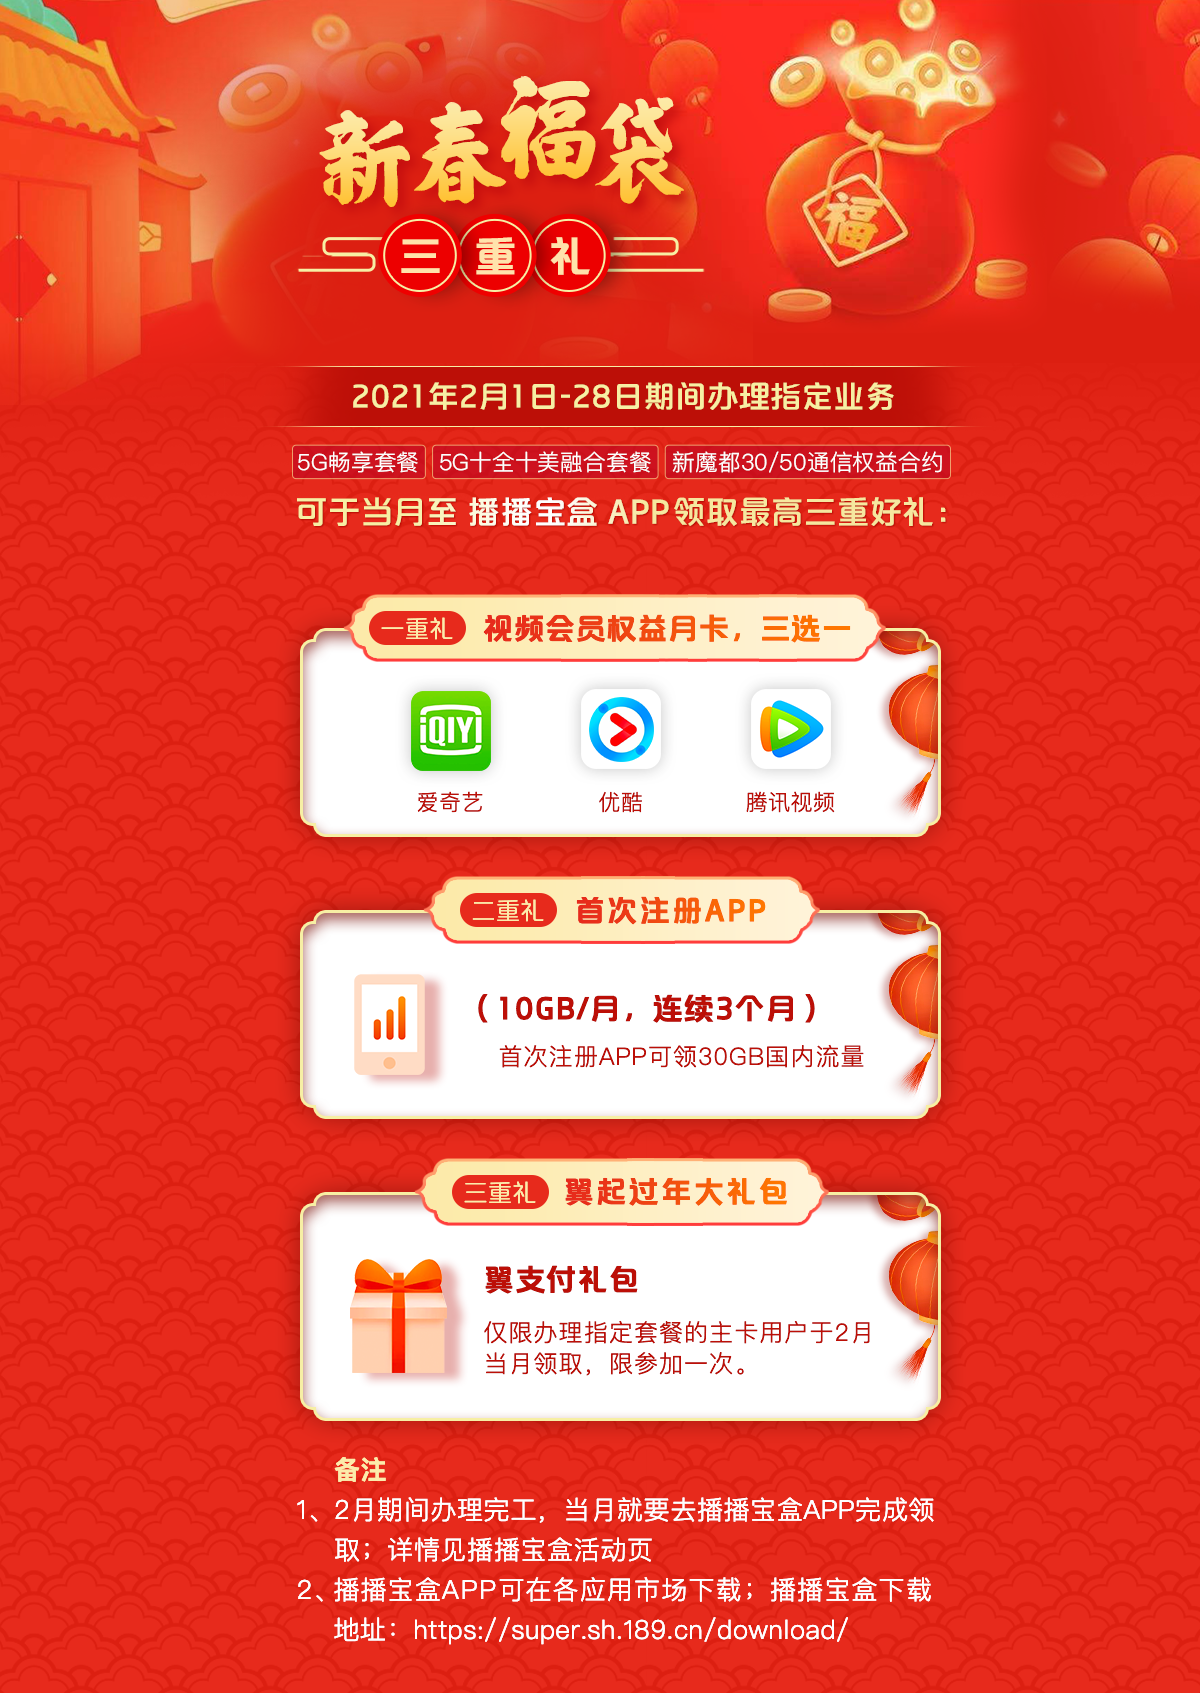 上林县居民畅享 5G 带来的便捷家居生活  第1张